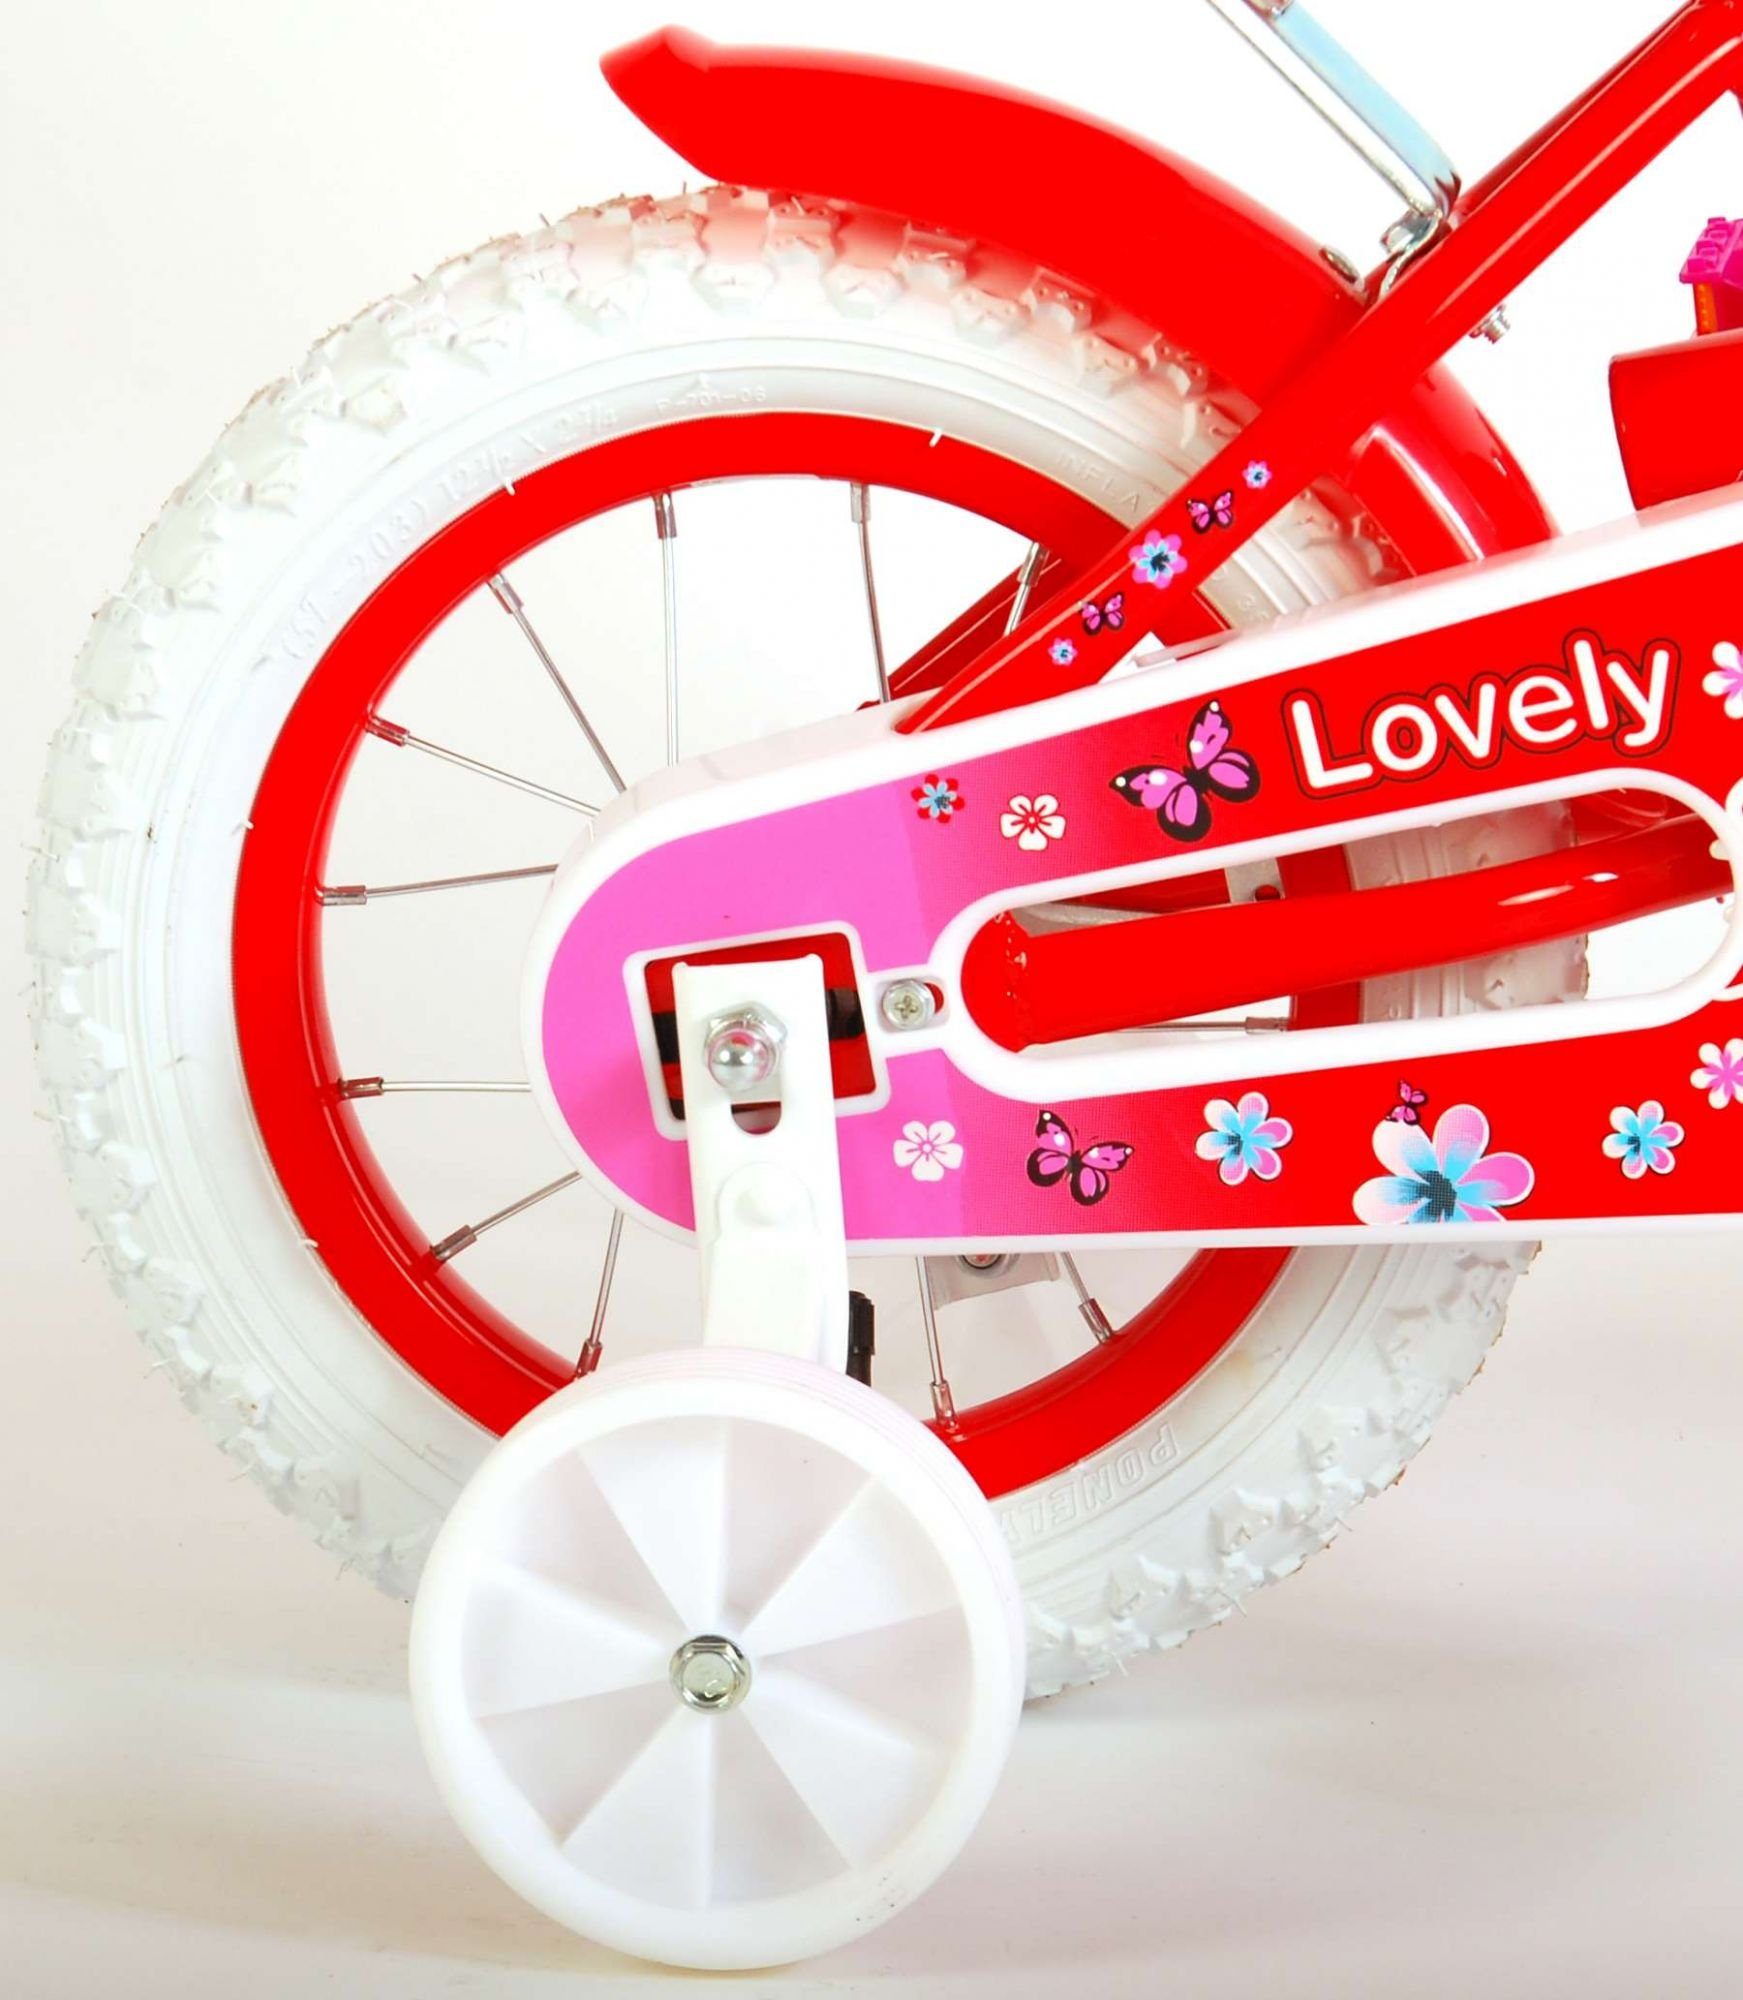 Weiß 12 LeNoSa Fahrrad - Rot Kinderfahrrad Fahrradkorb / Zoll Puppensitz & Mädchen